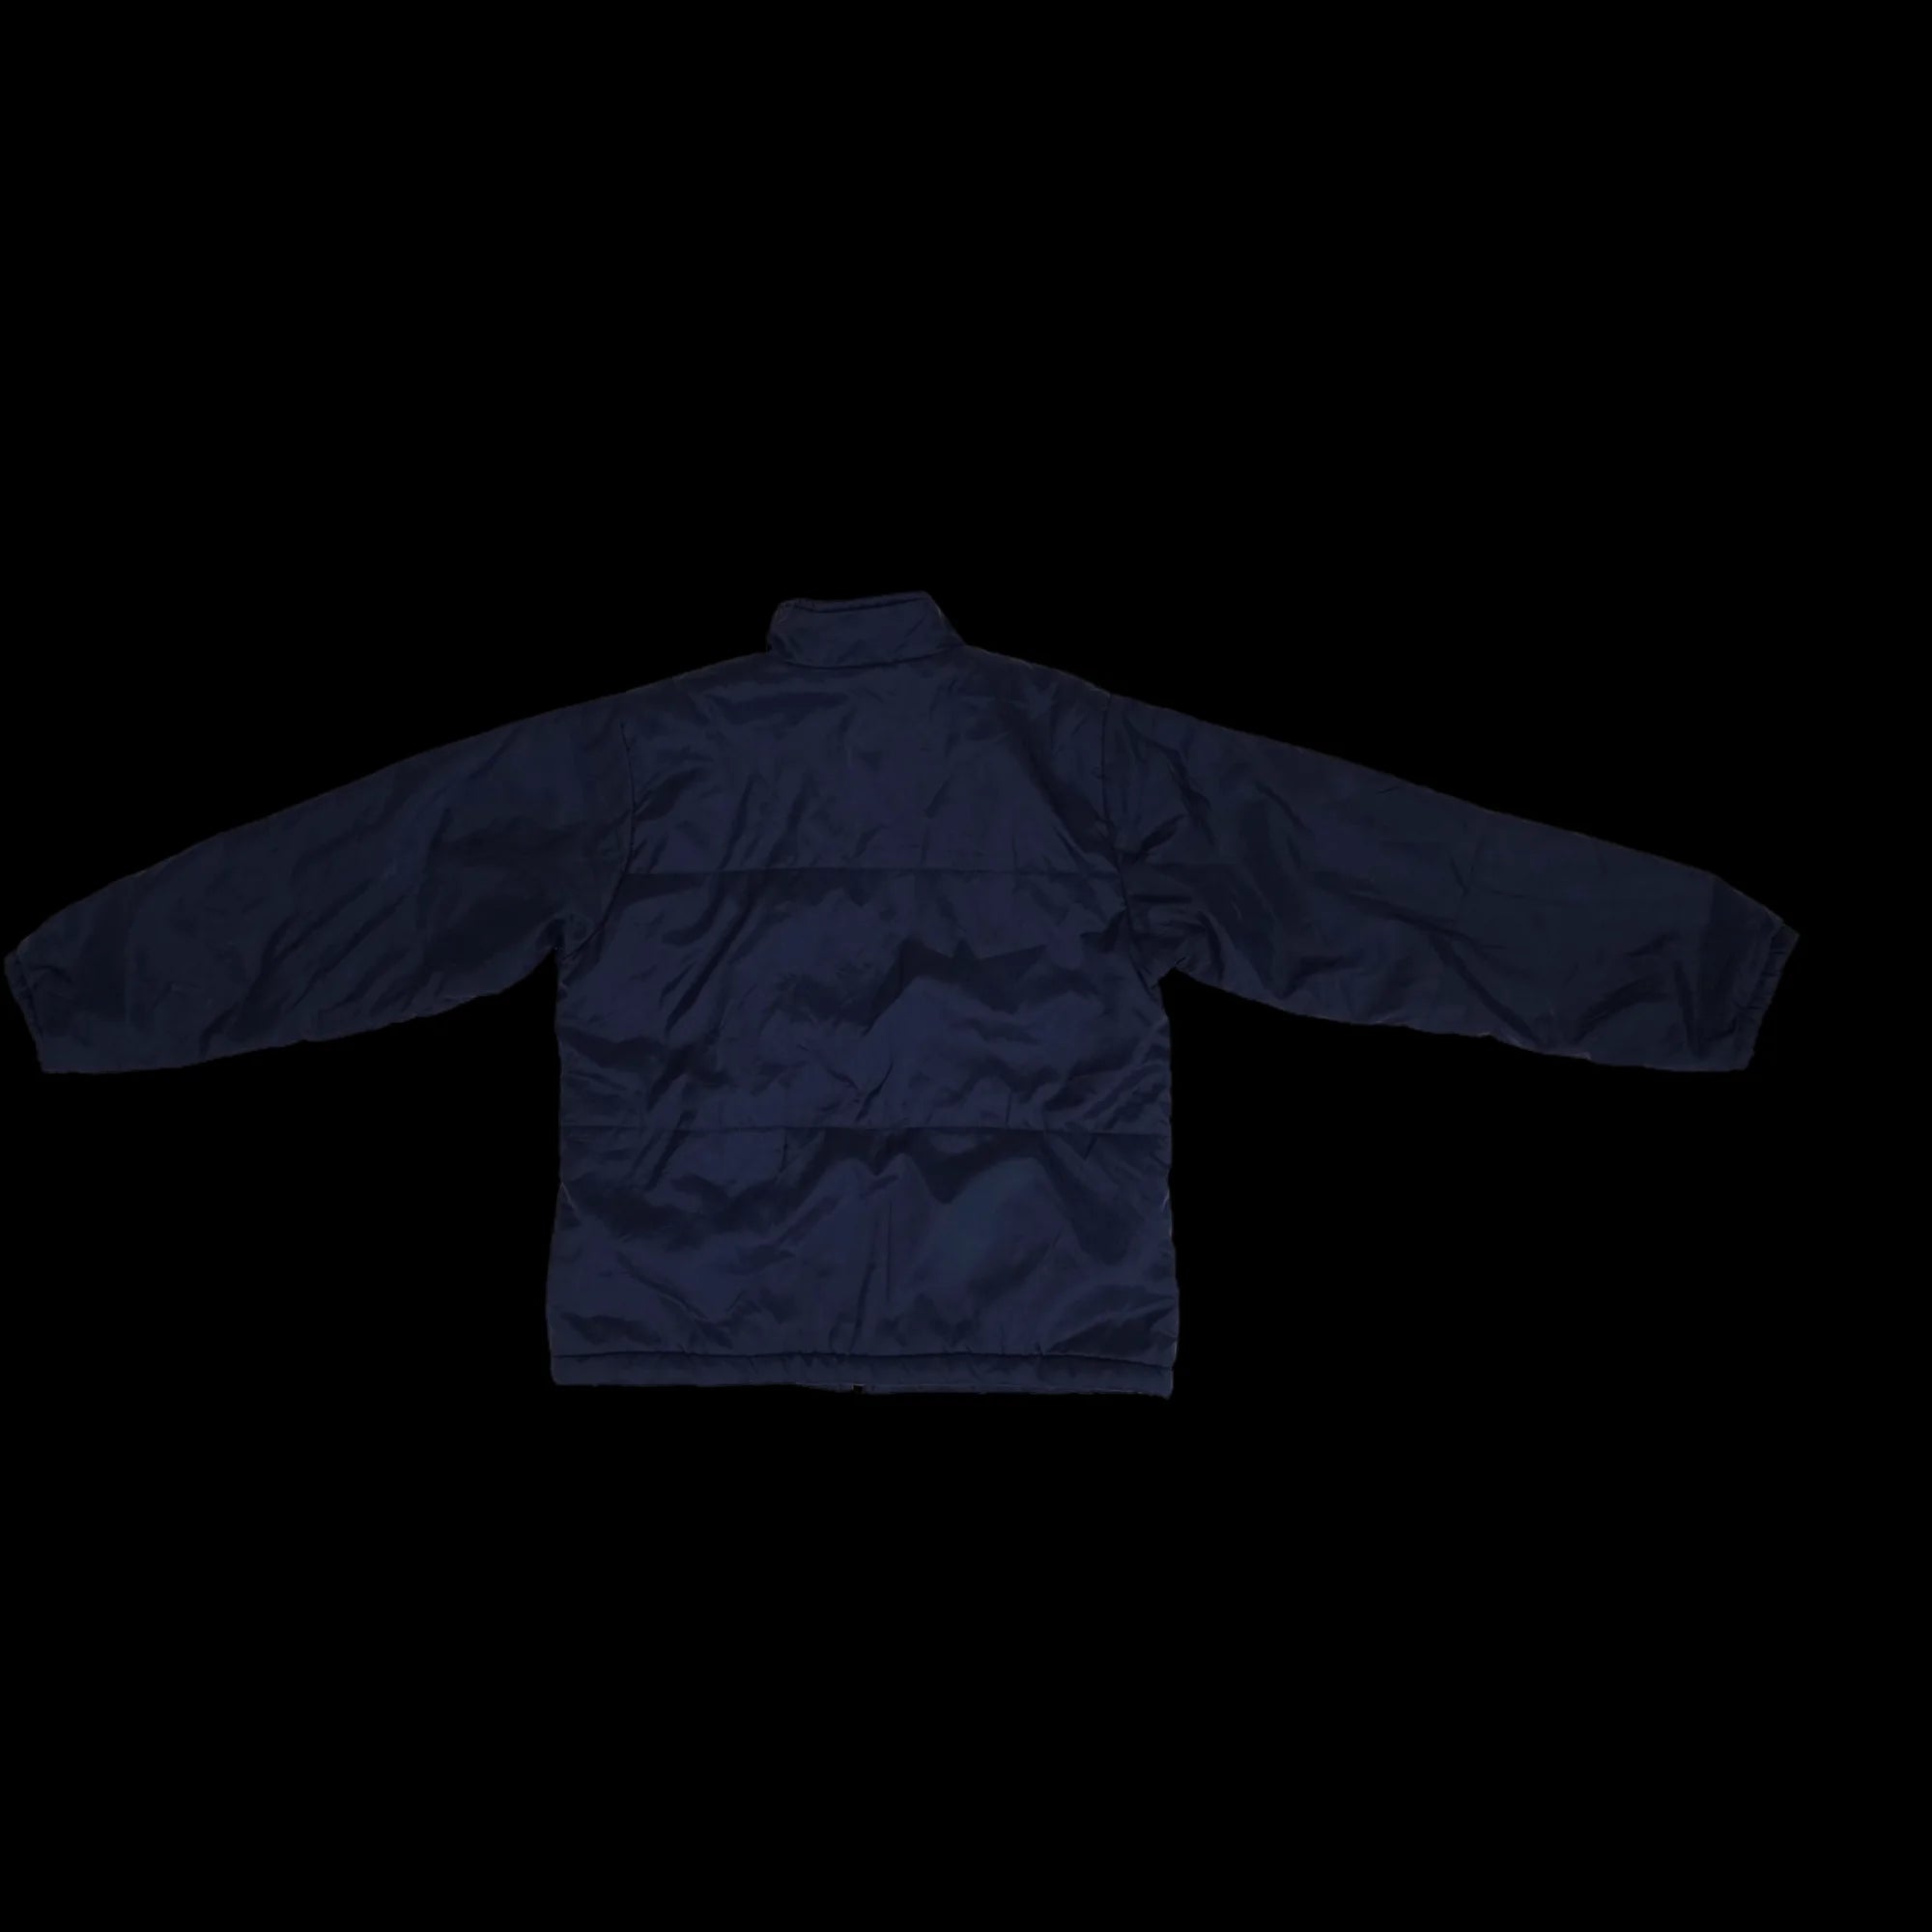 Unisex Nike Blue Bomber Jacket Coat UK Large - 5 - 3465